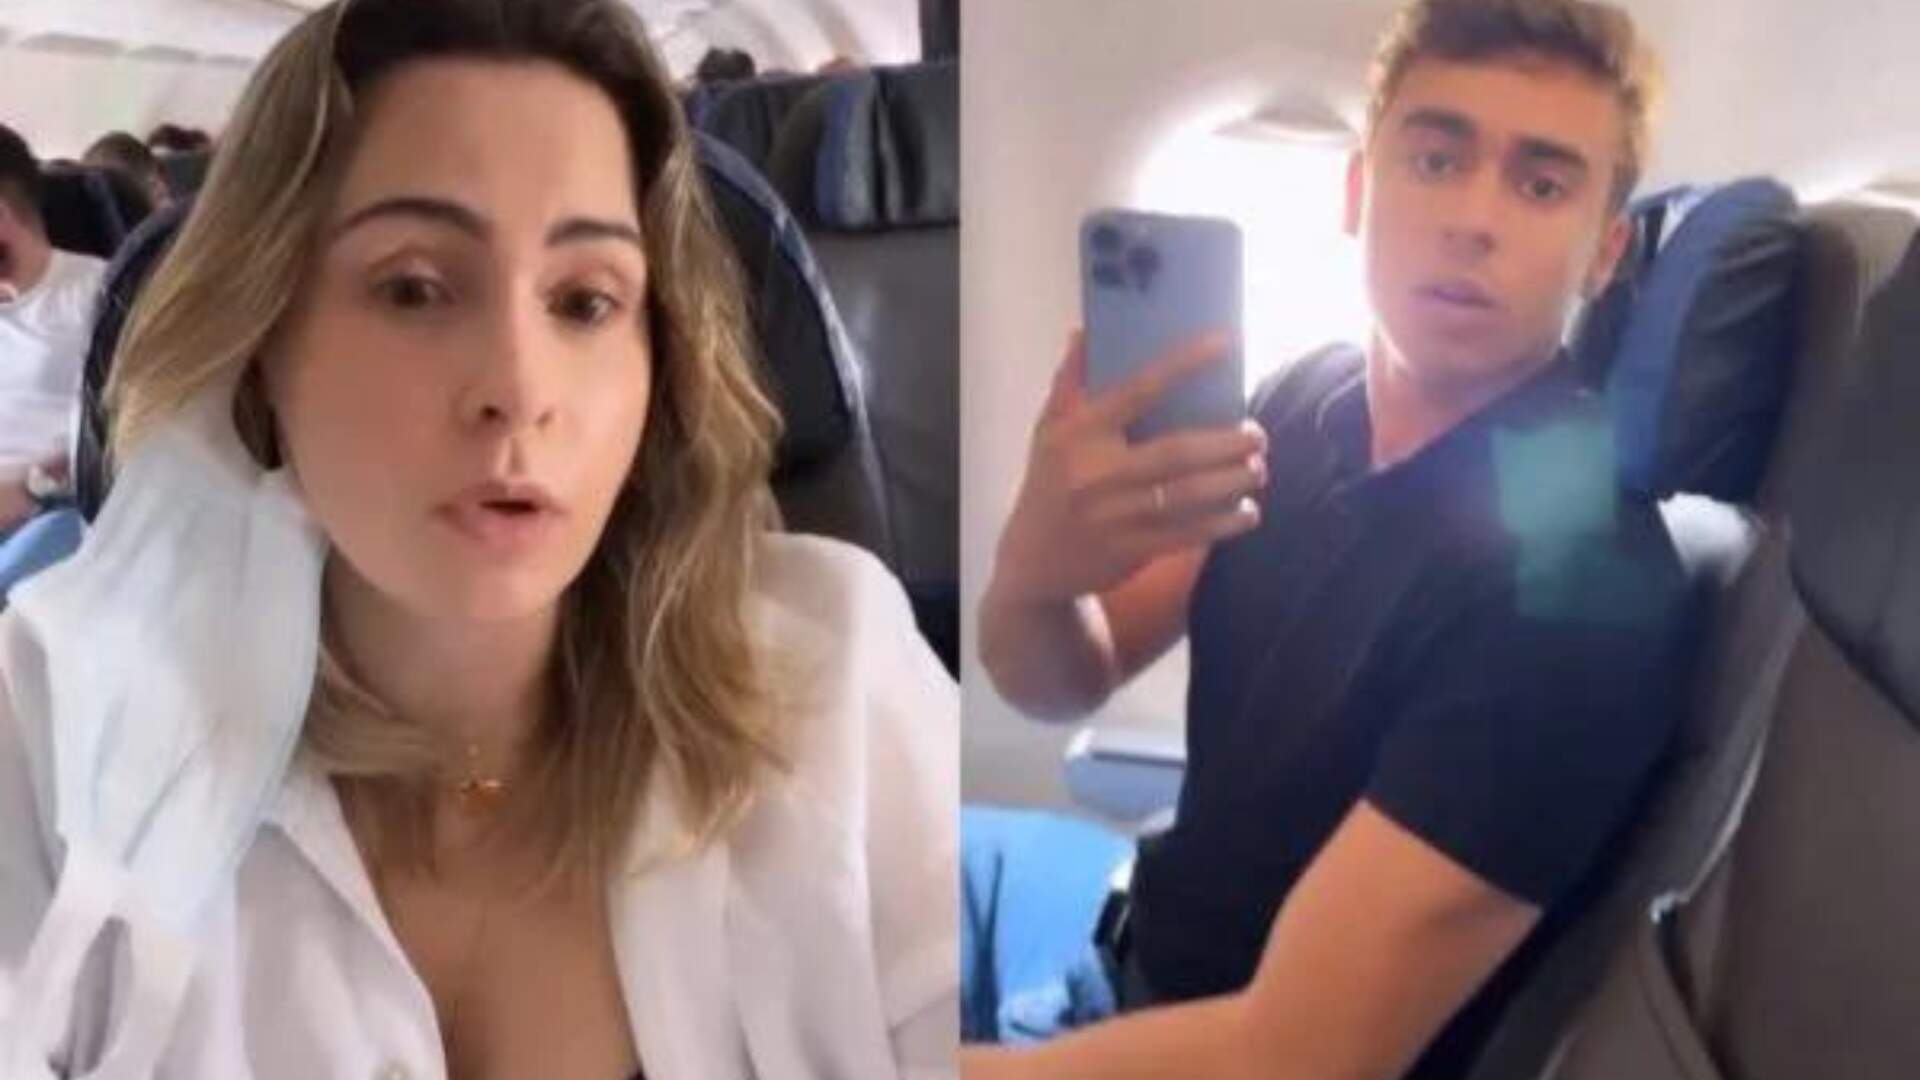 Ana Paula Renault briga com Nikolas Ferreira, Deputado Federal, no avião e causa confusão: “Crime”